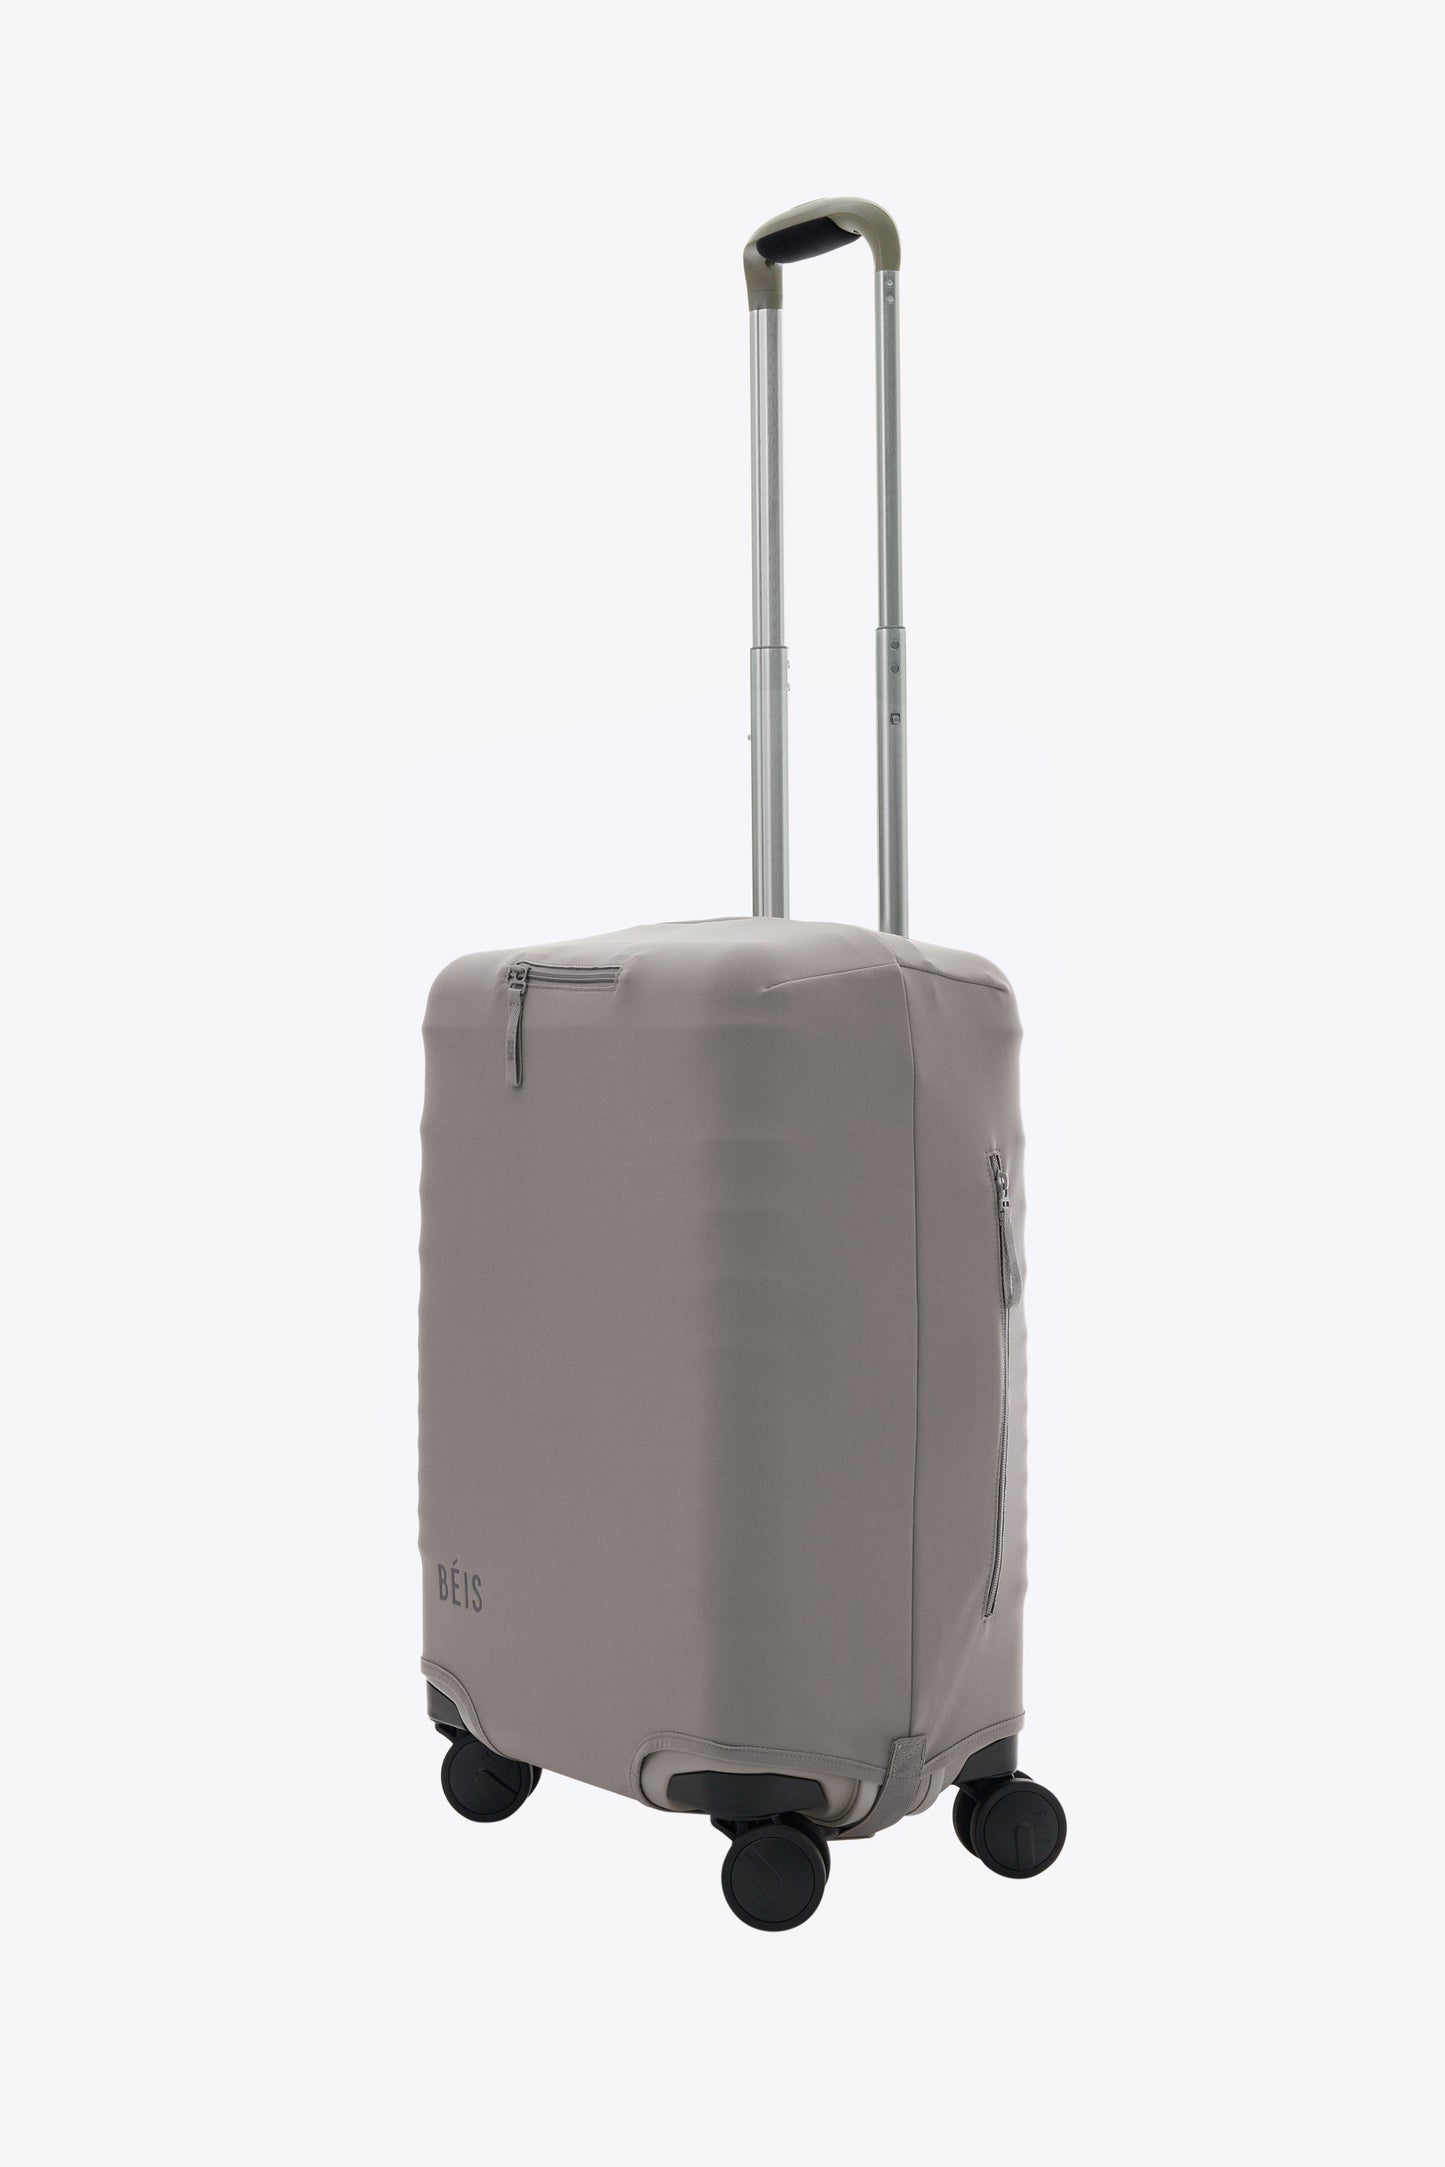 Le couvre-bagages de cabine en gris